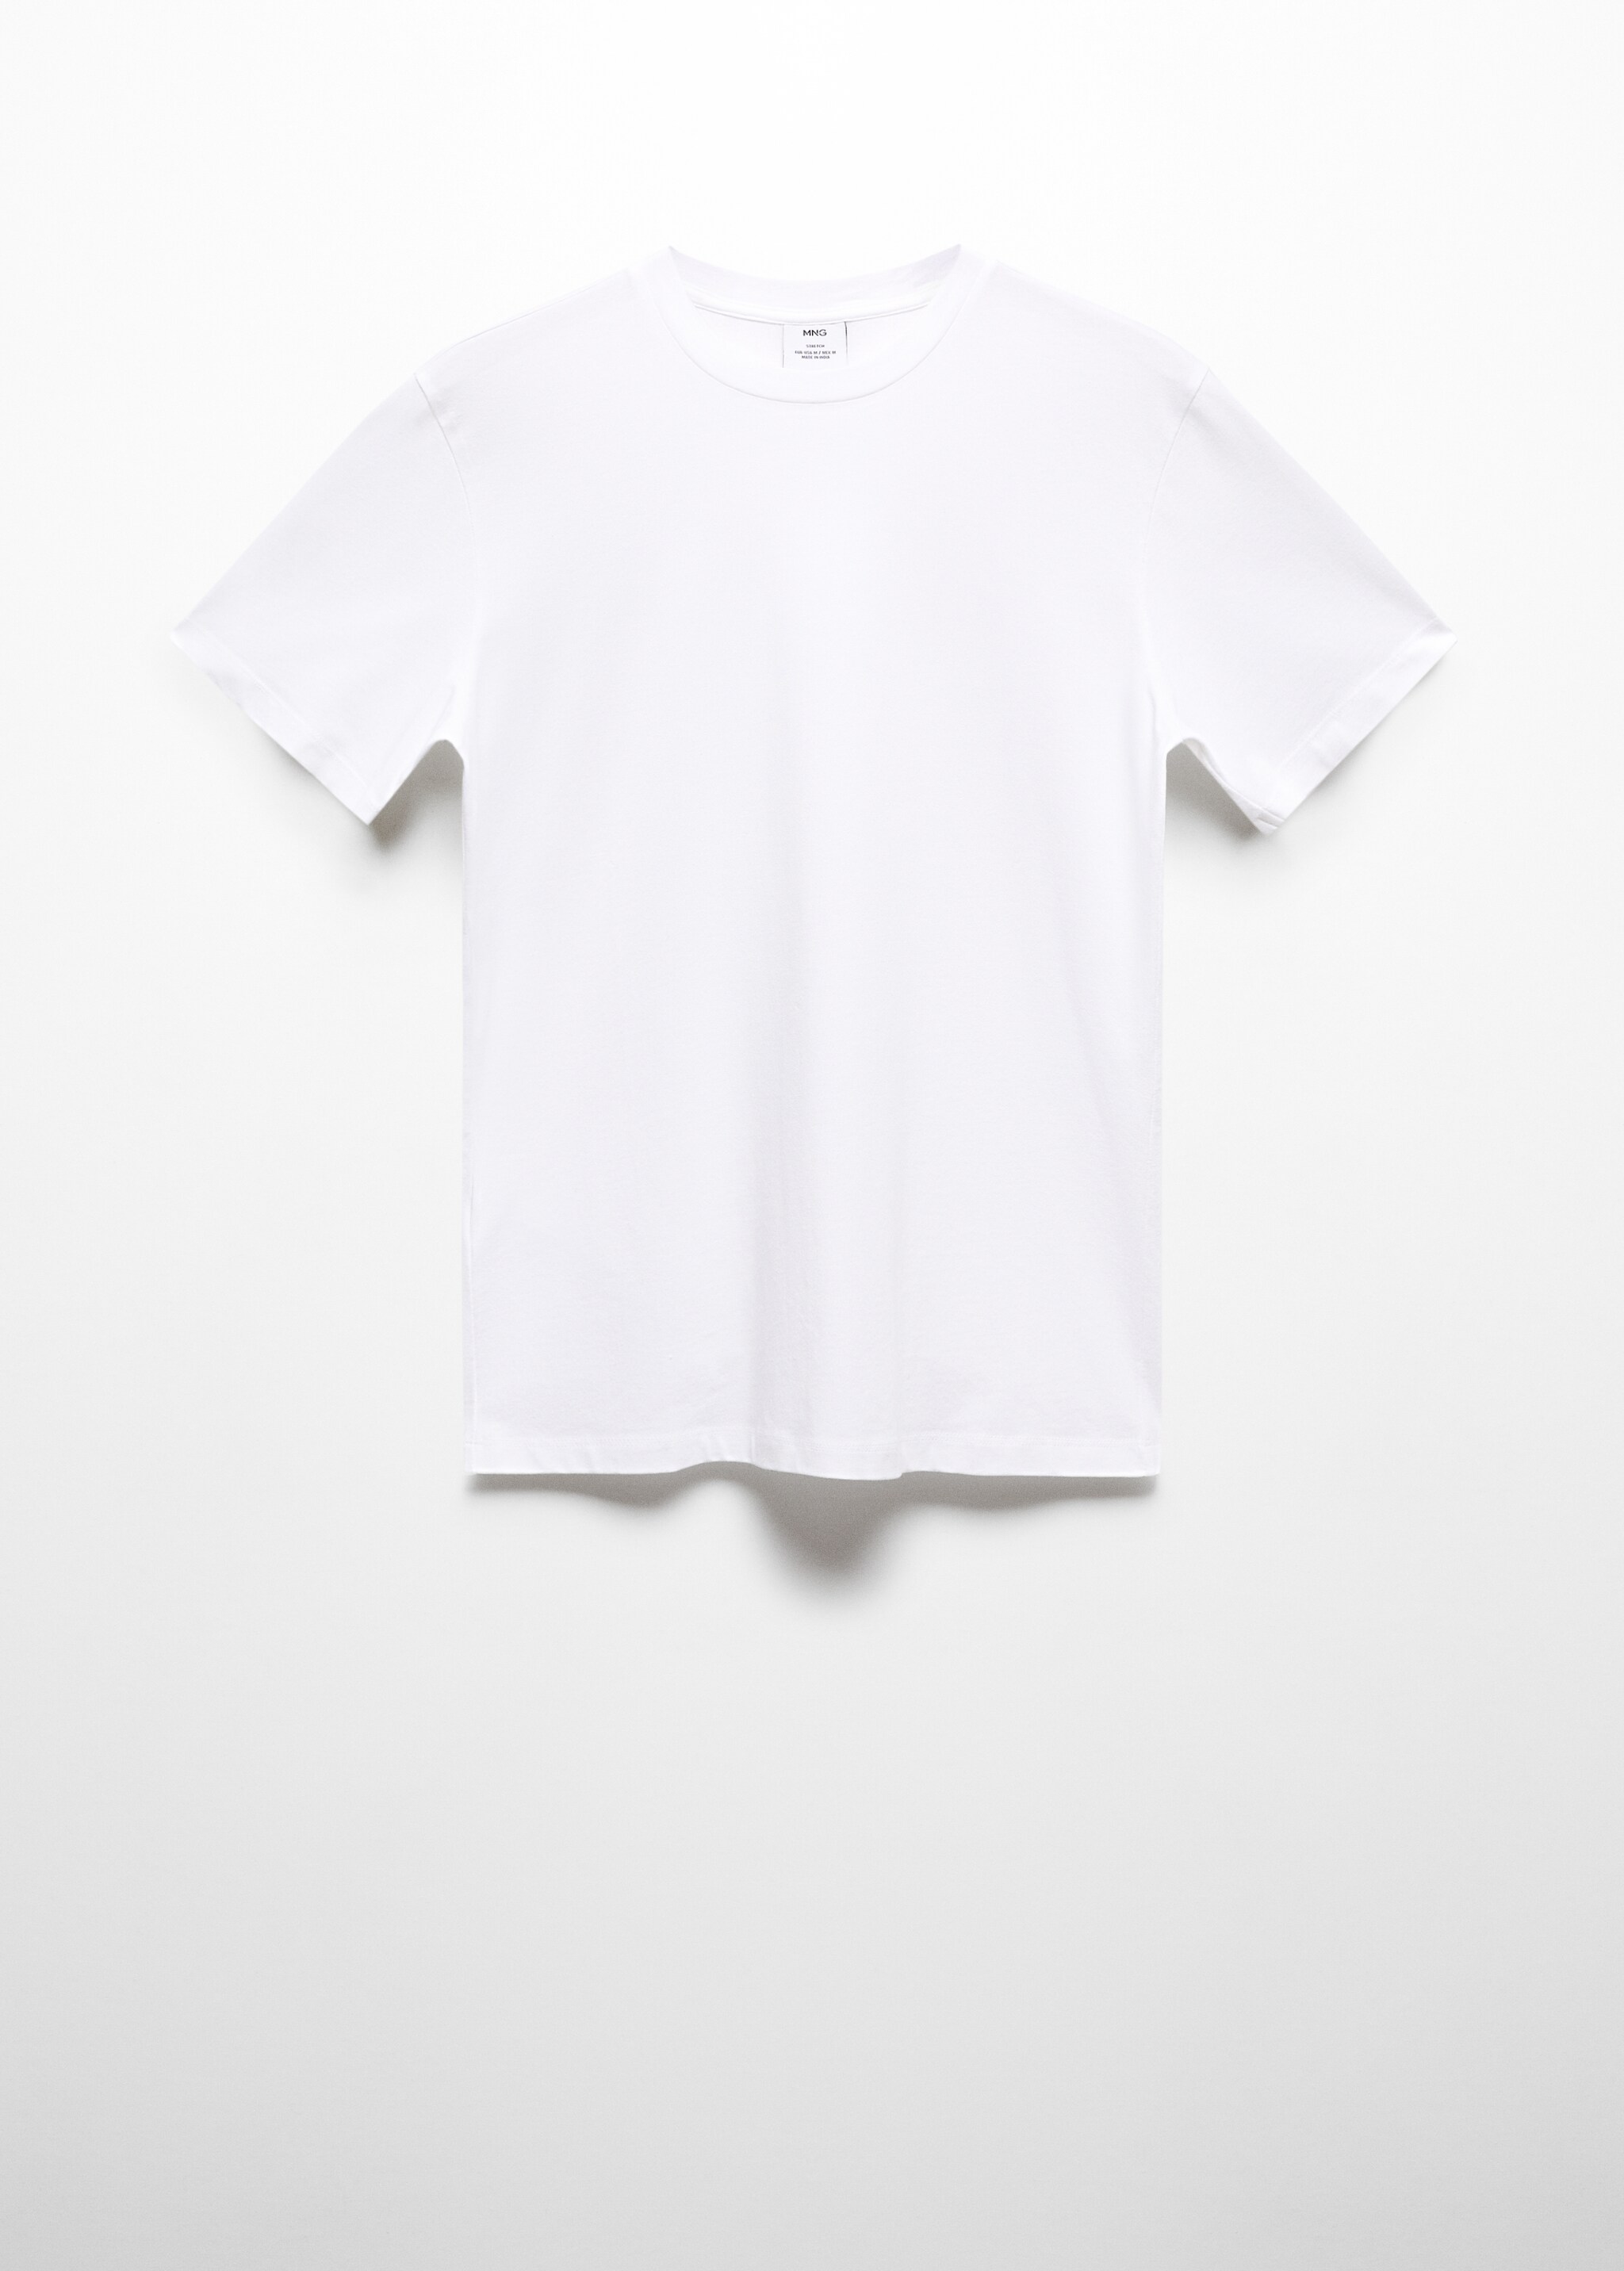 T-shirt algodão stretch - Artigo sem modelo